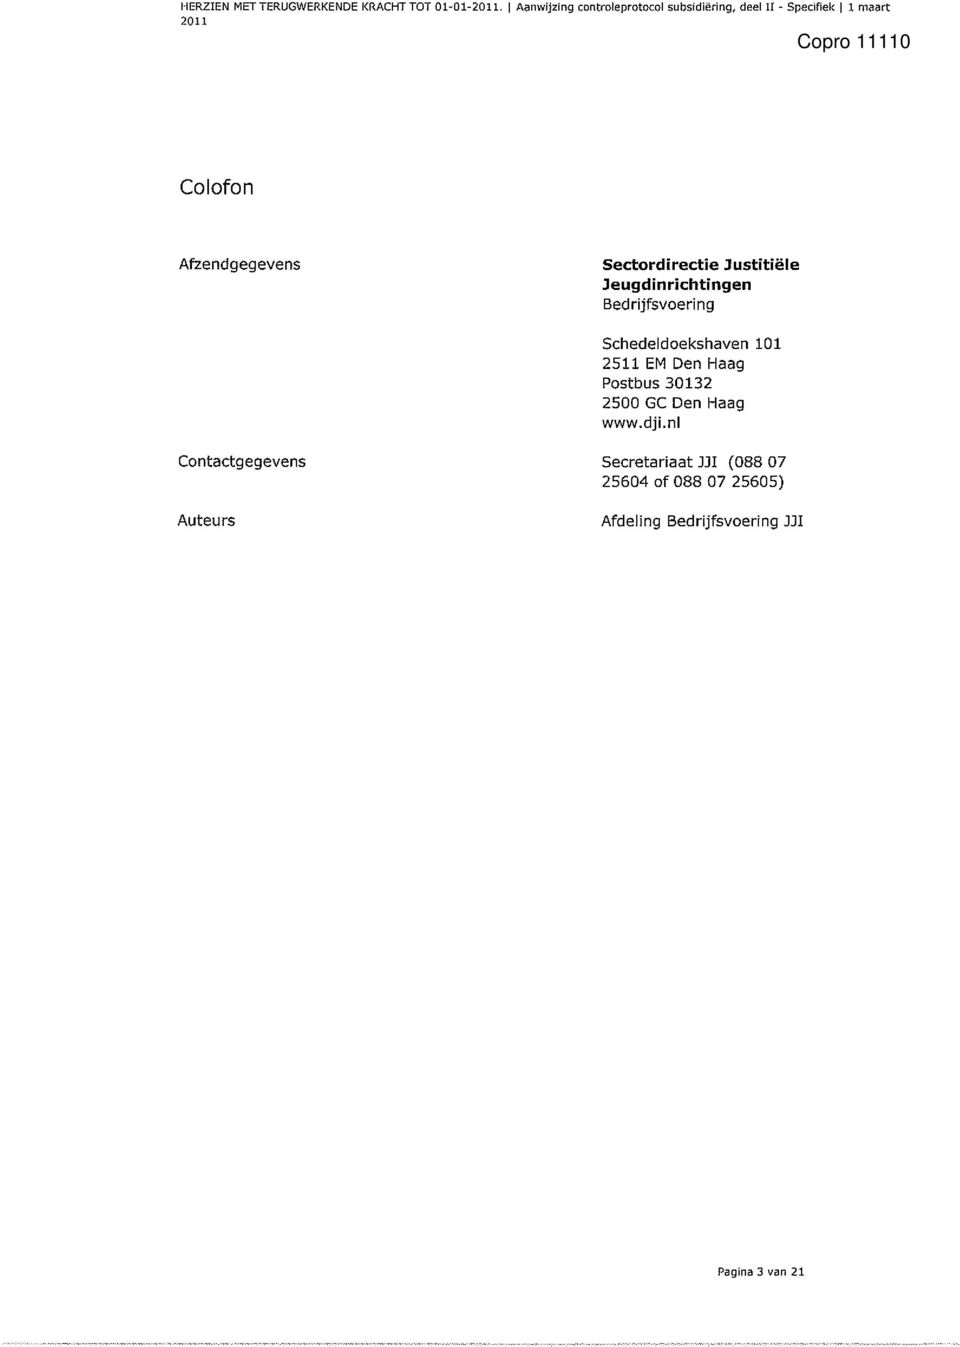 Sectordirectie Justitiële Jeugdinrichtingen Bed rijfsvoering Schedeldoekshaven 101 2511 EM Den Haag